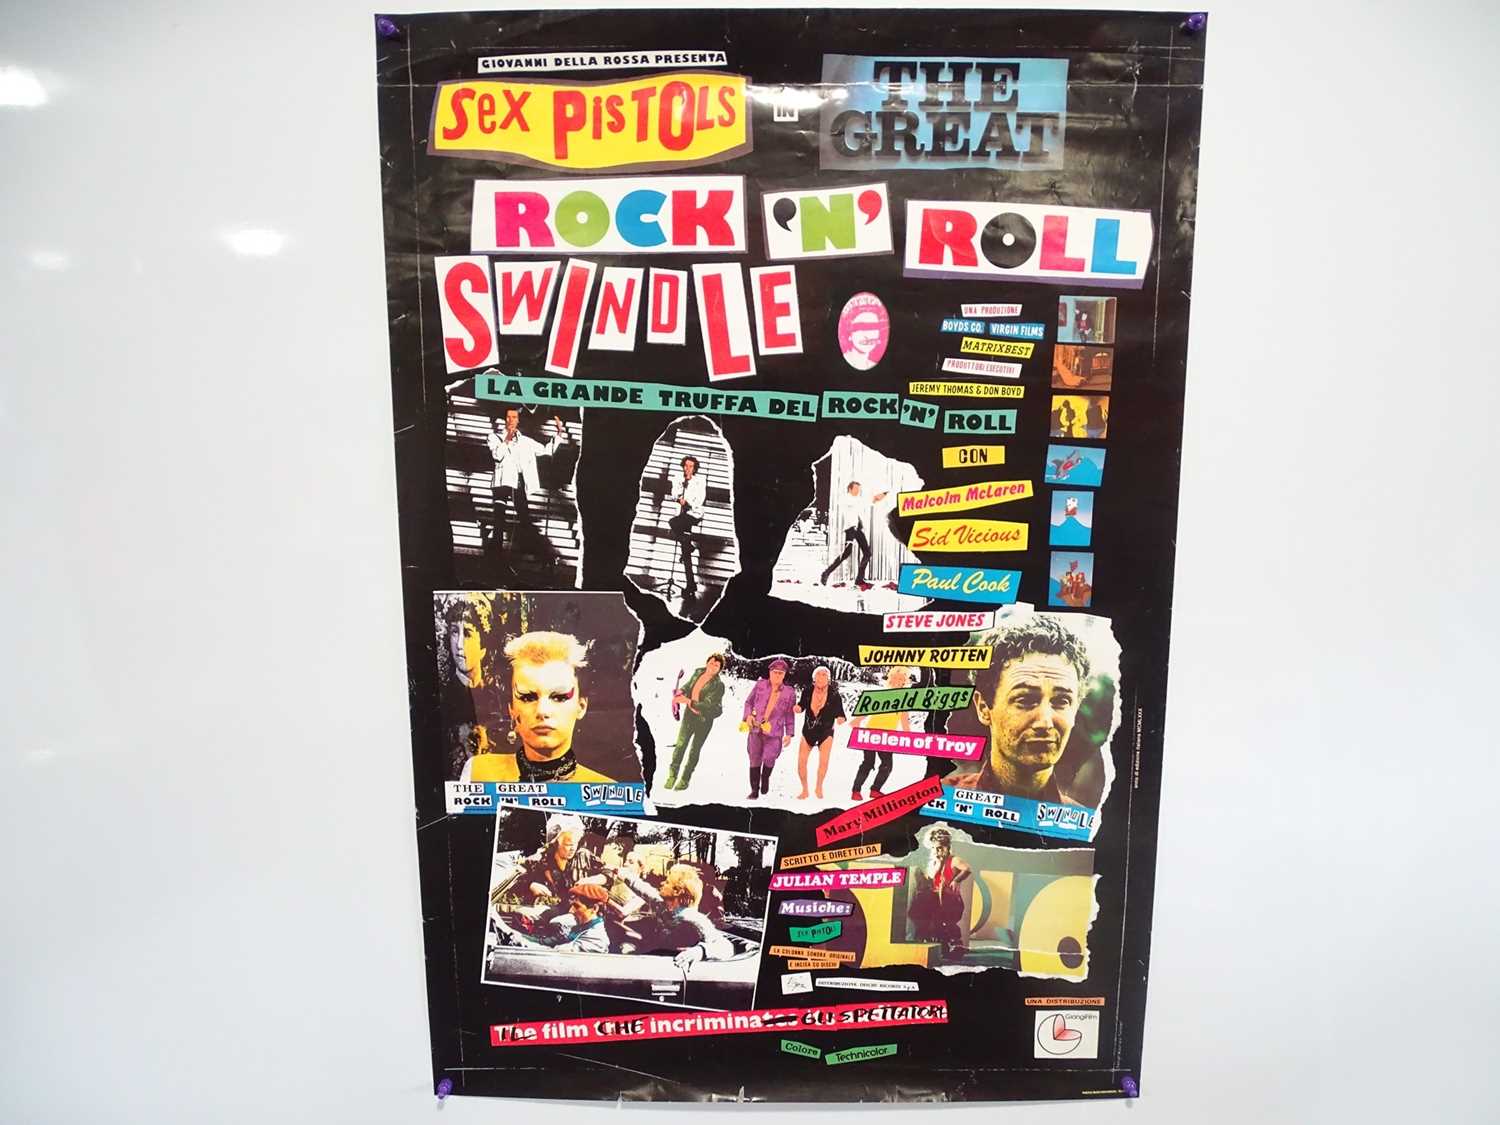 Lot 527 Sex Pistols Great Rock N Roll Swindle 6352